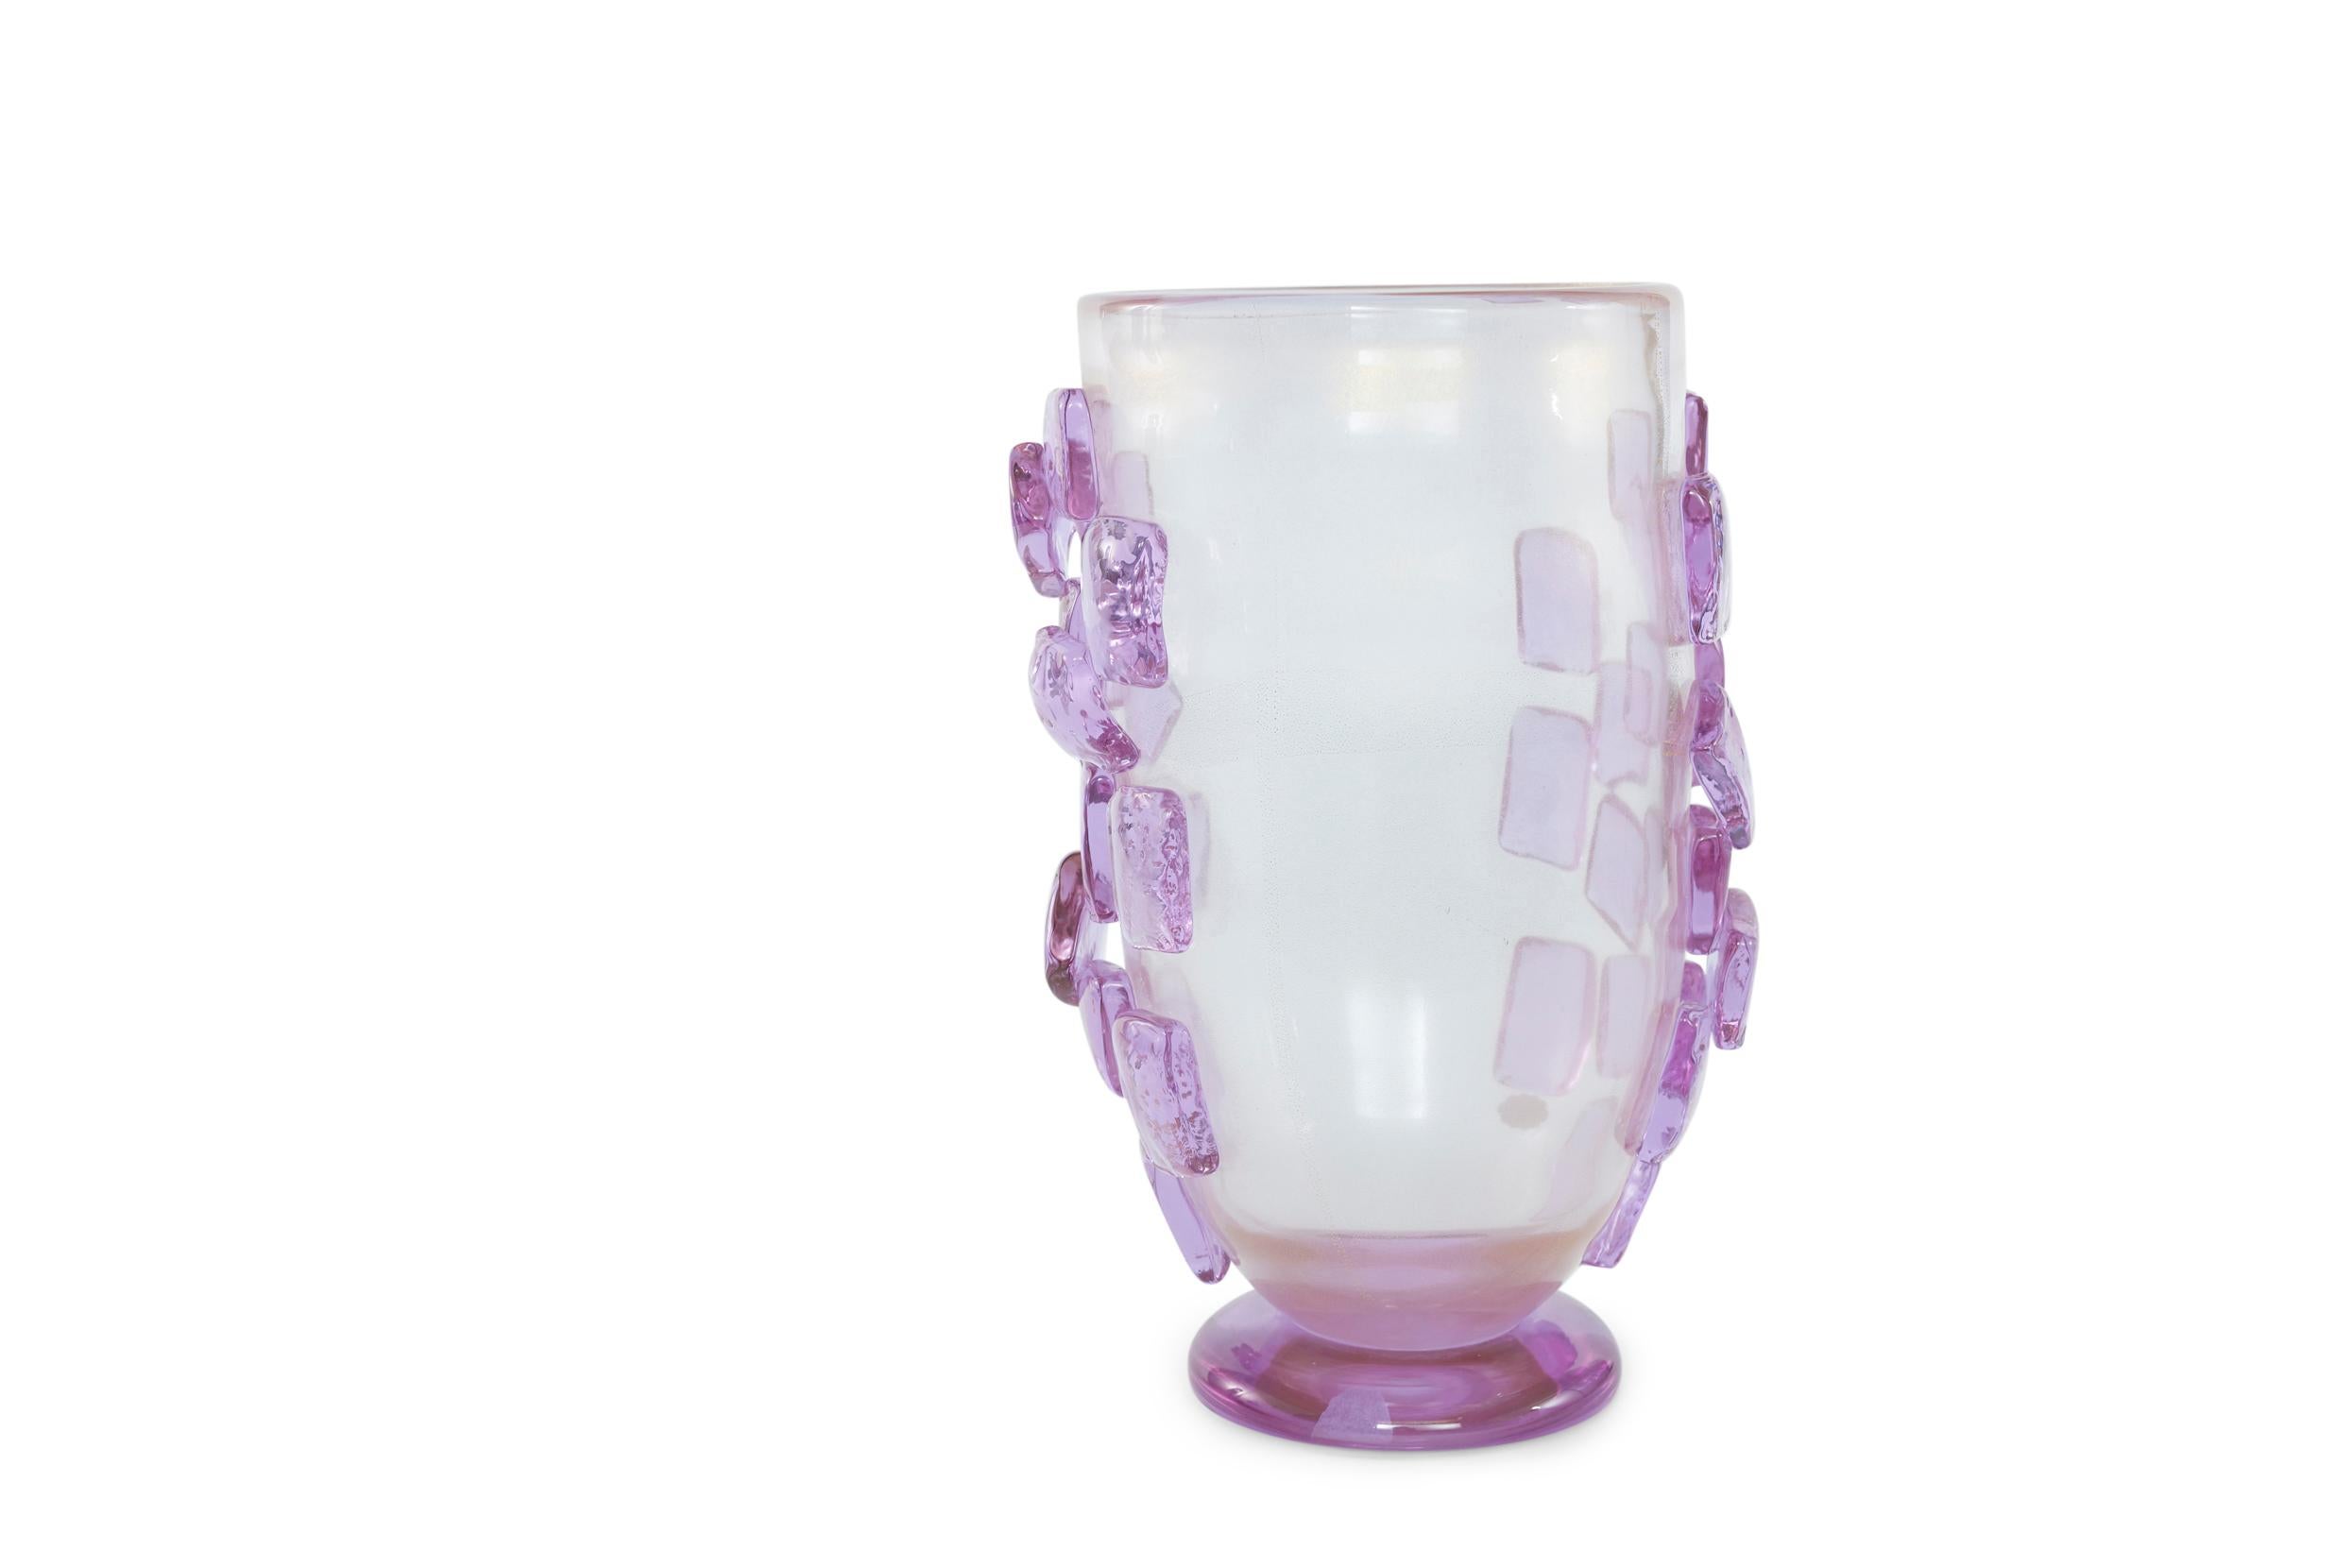 Art Deco Style Murano Glass Decorative Vase For Sale 4